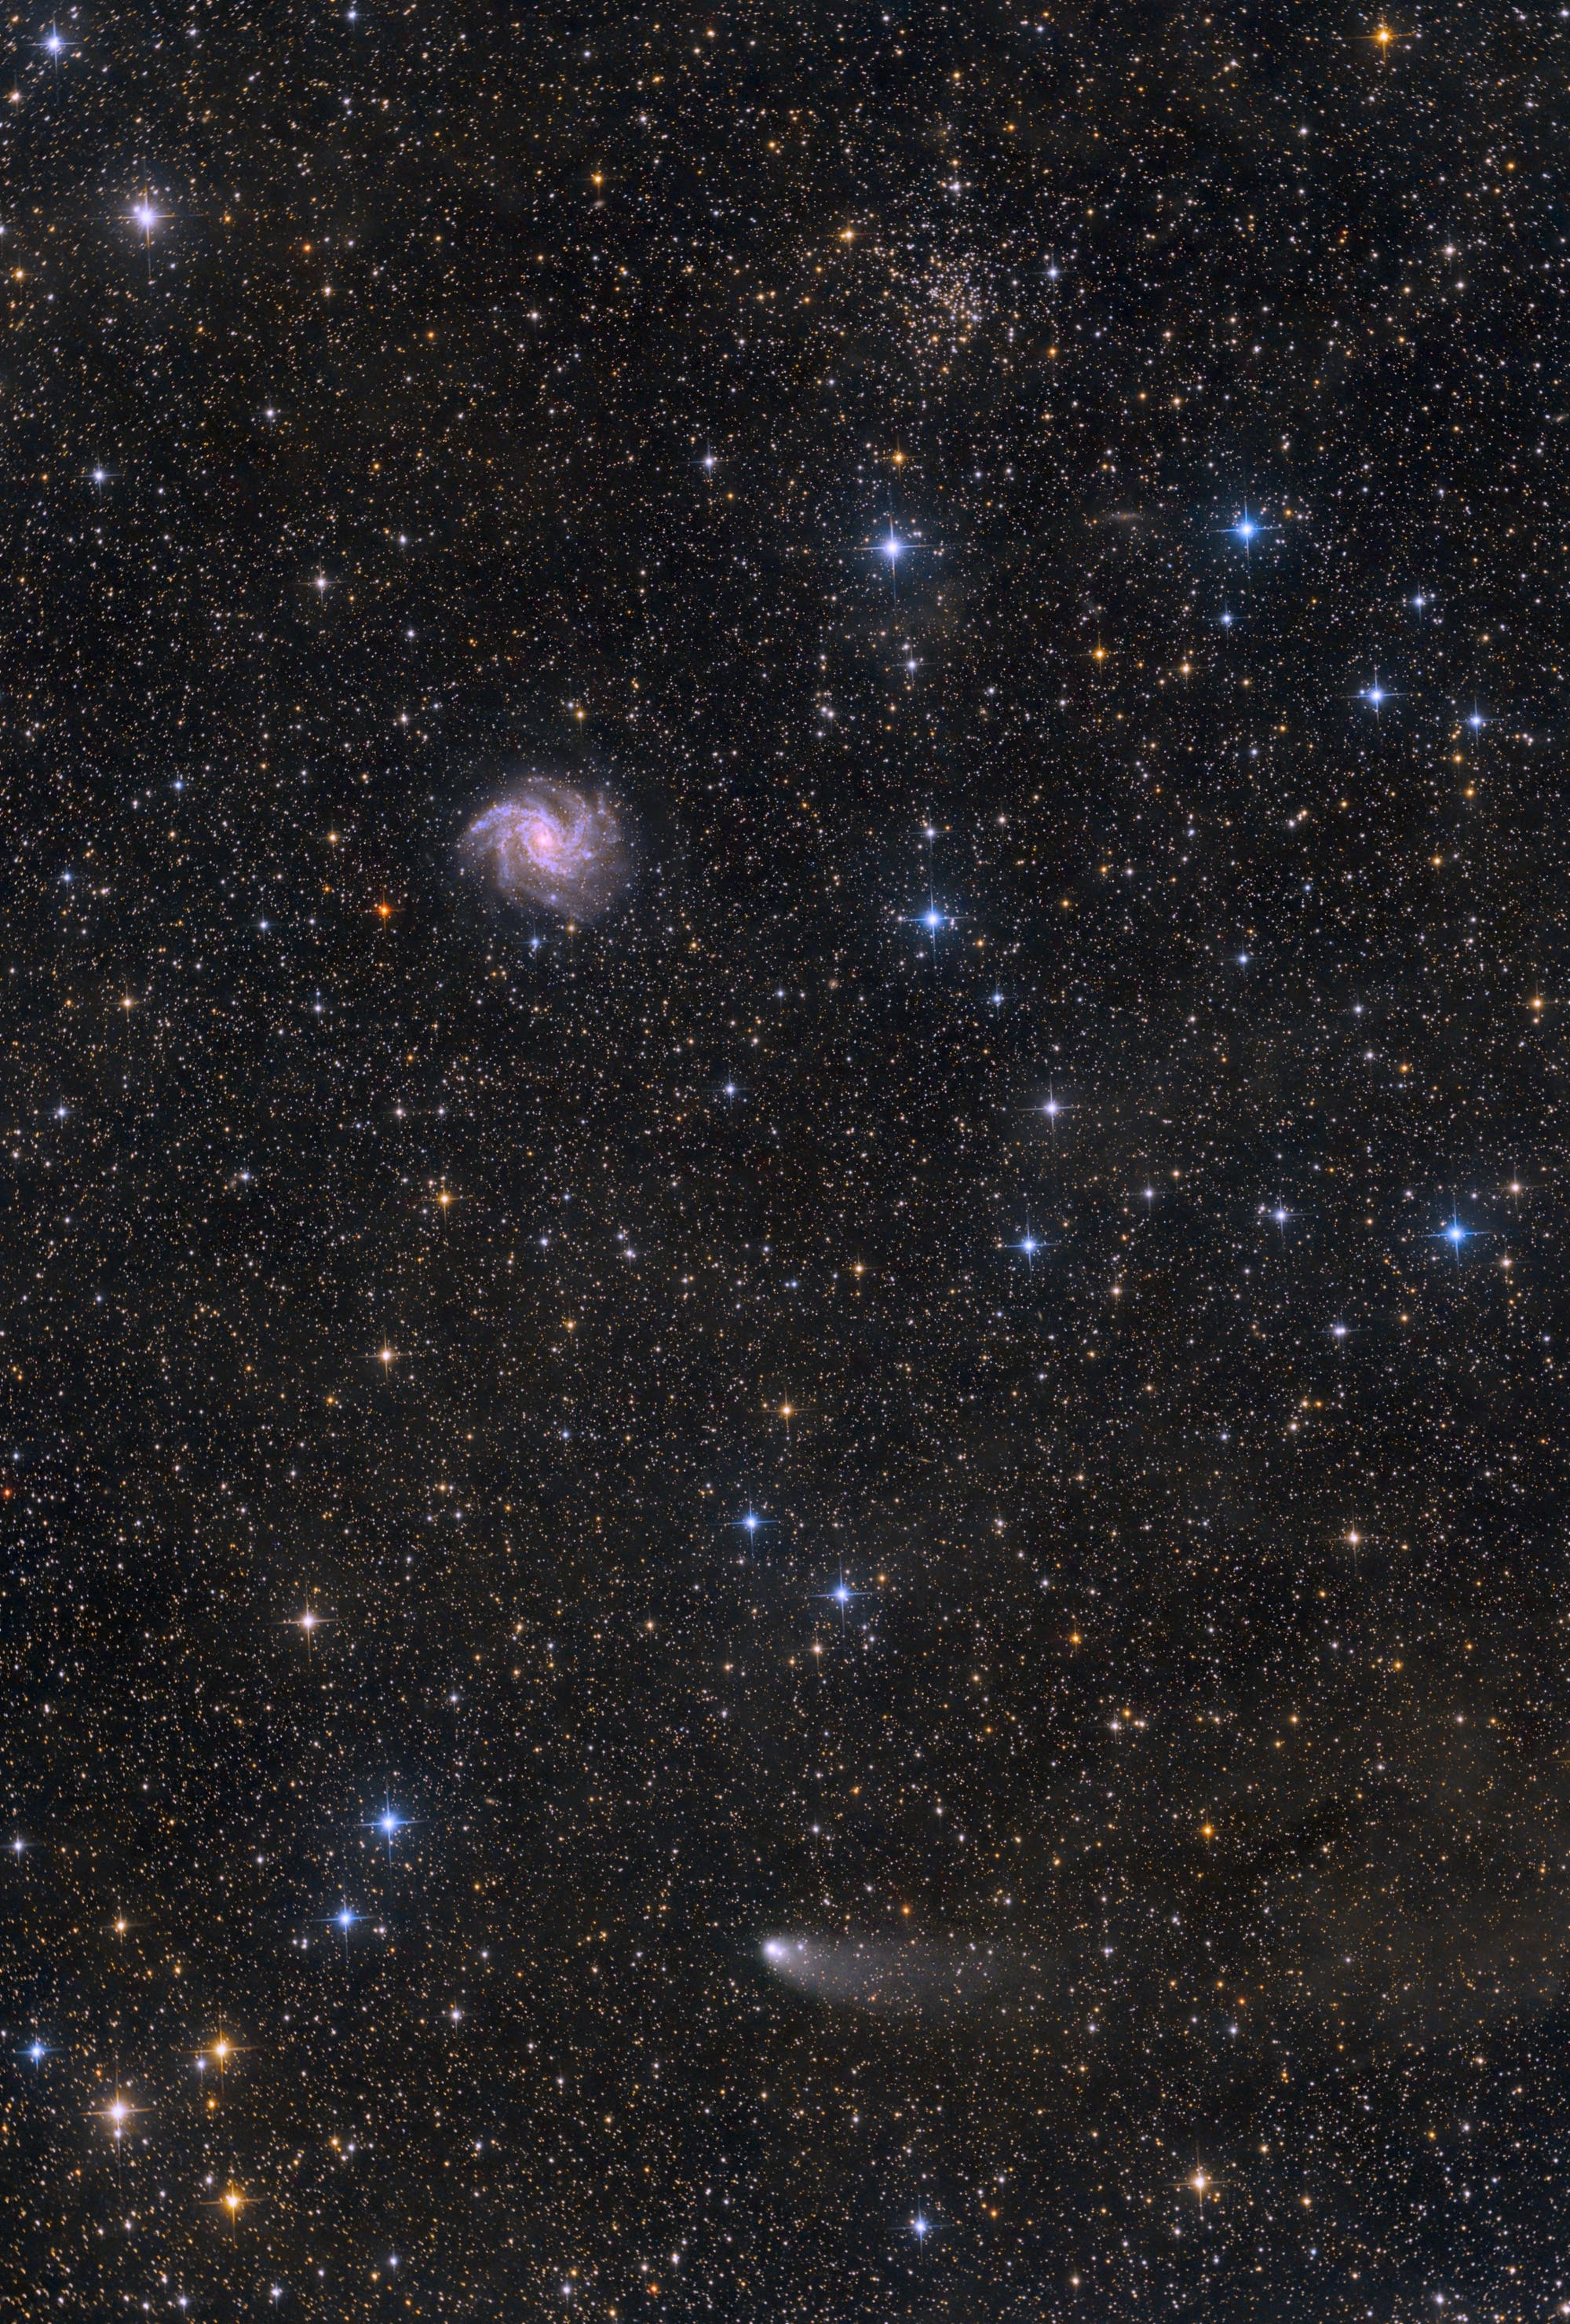 Komet C/2021 S3 (Panstarrs) unterhalb der Galaxie NGC 6946 und dem Sternhaufen NGC 6939